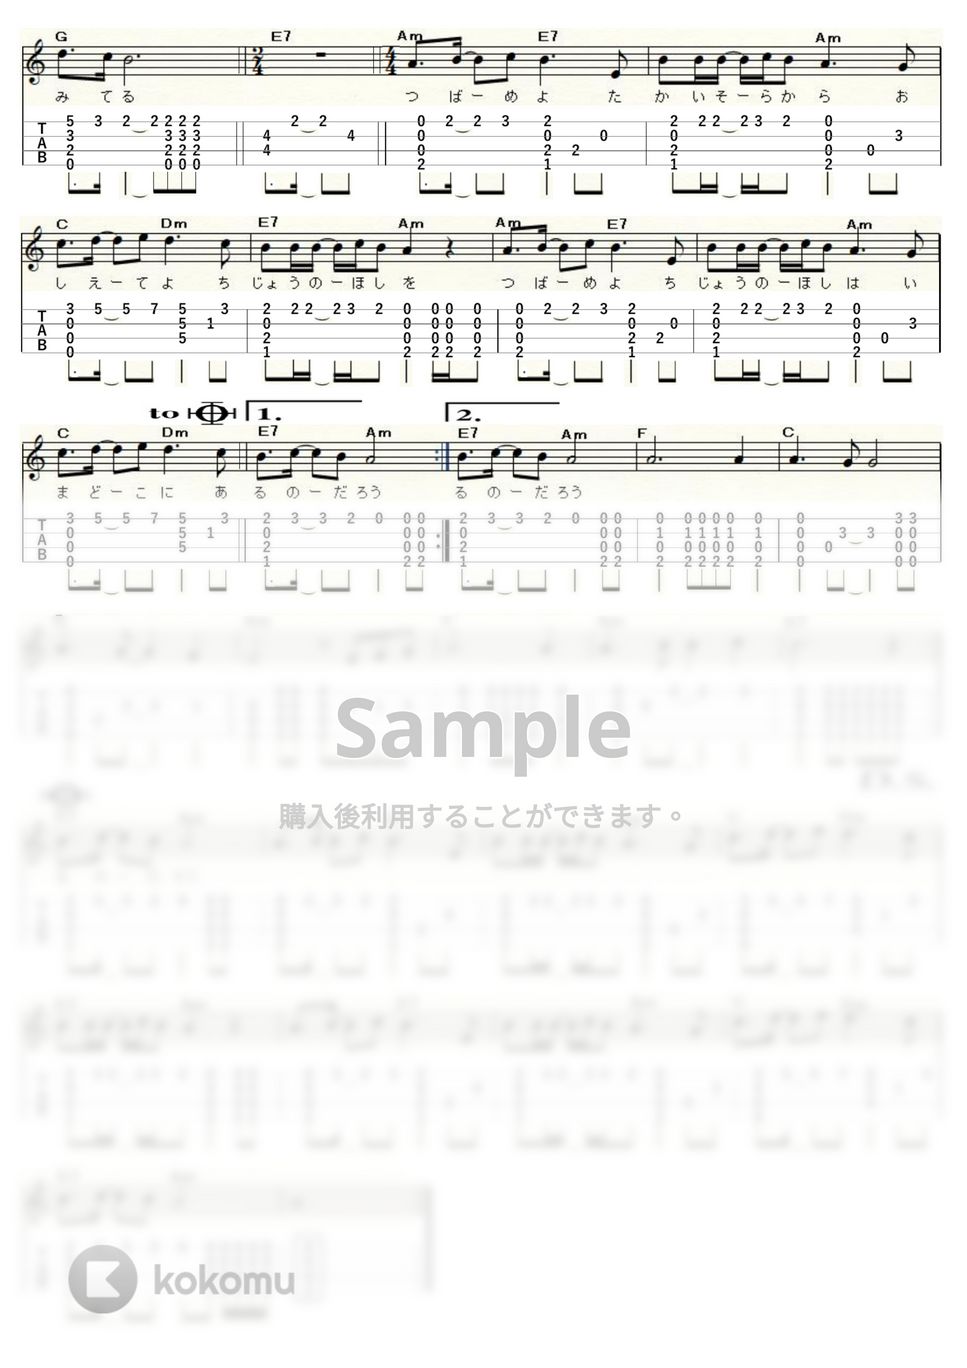 中島みゆき - 地上の星 (ｳｸﾚﾚｿﾛ / High-G,Low-G / 中級) by ukulelepapa